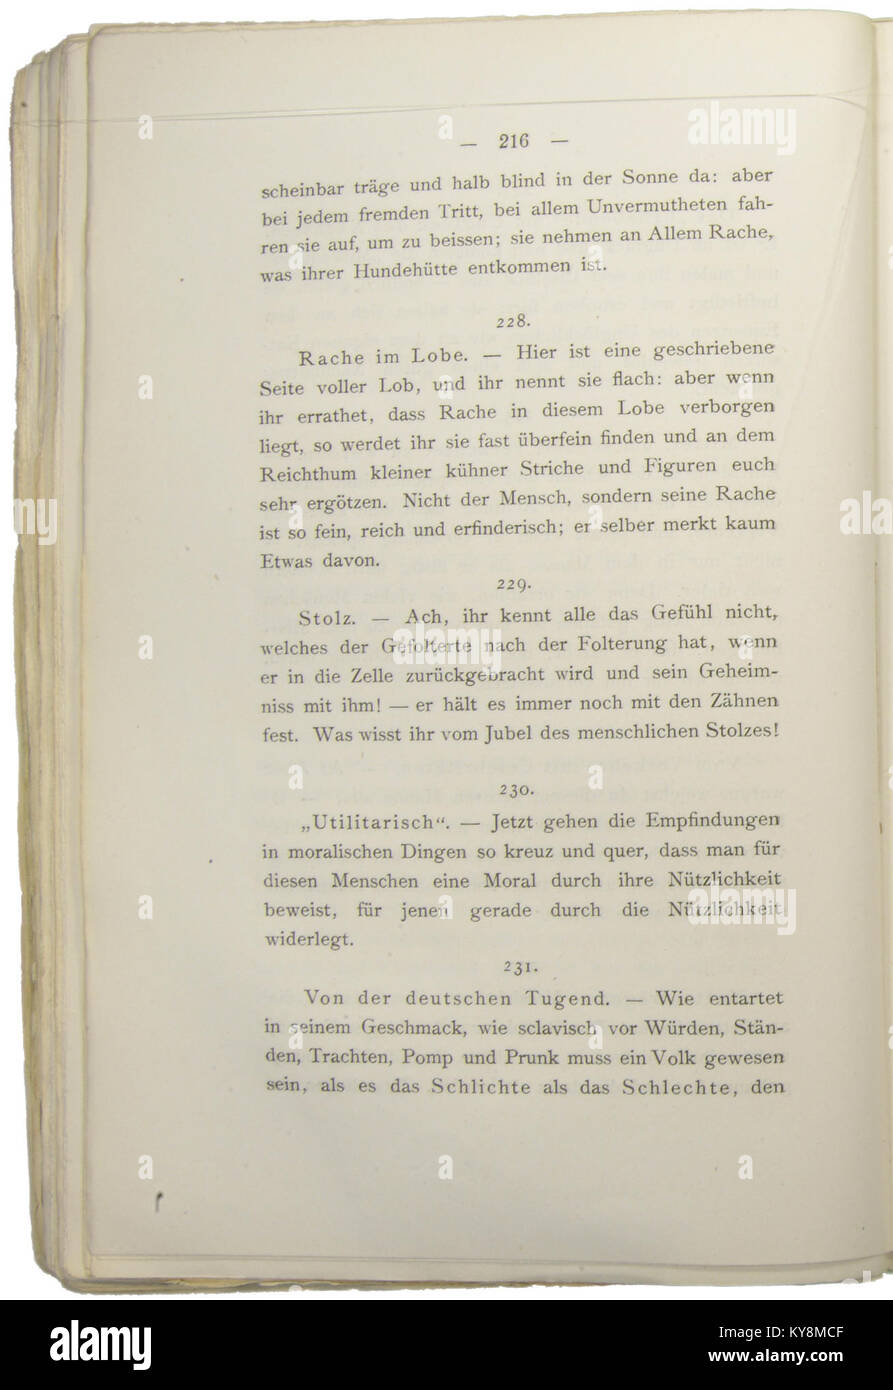 Nietzsche - Morgenröthe, 1881, p. 216 Stock Photo